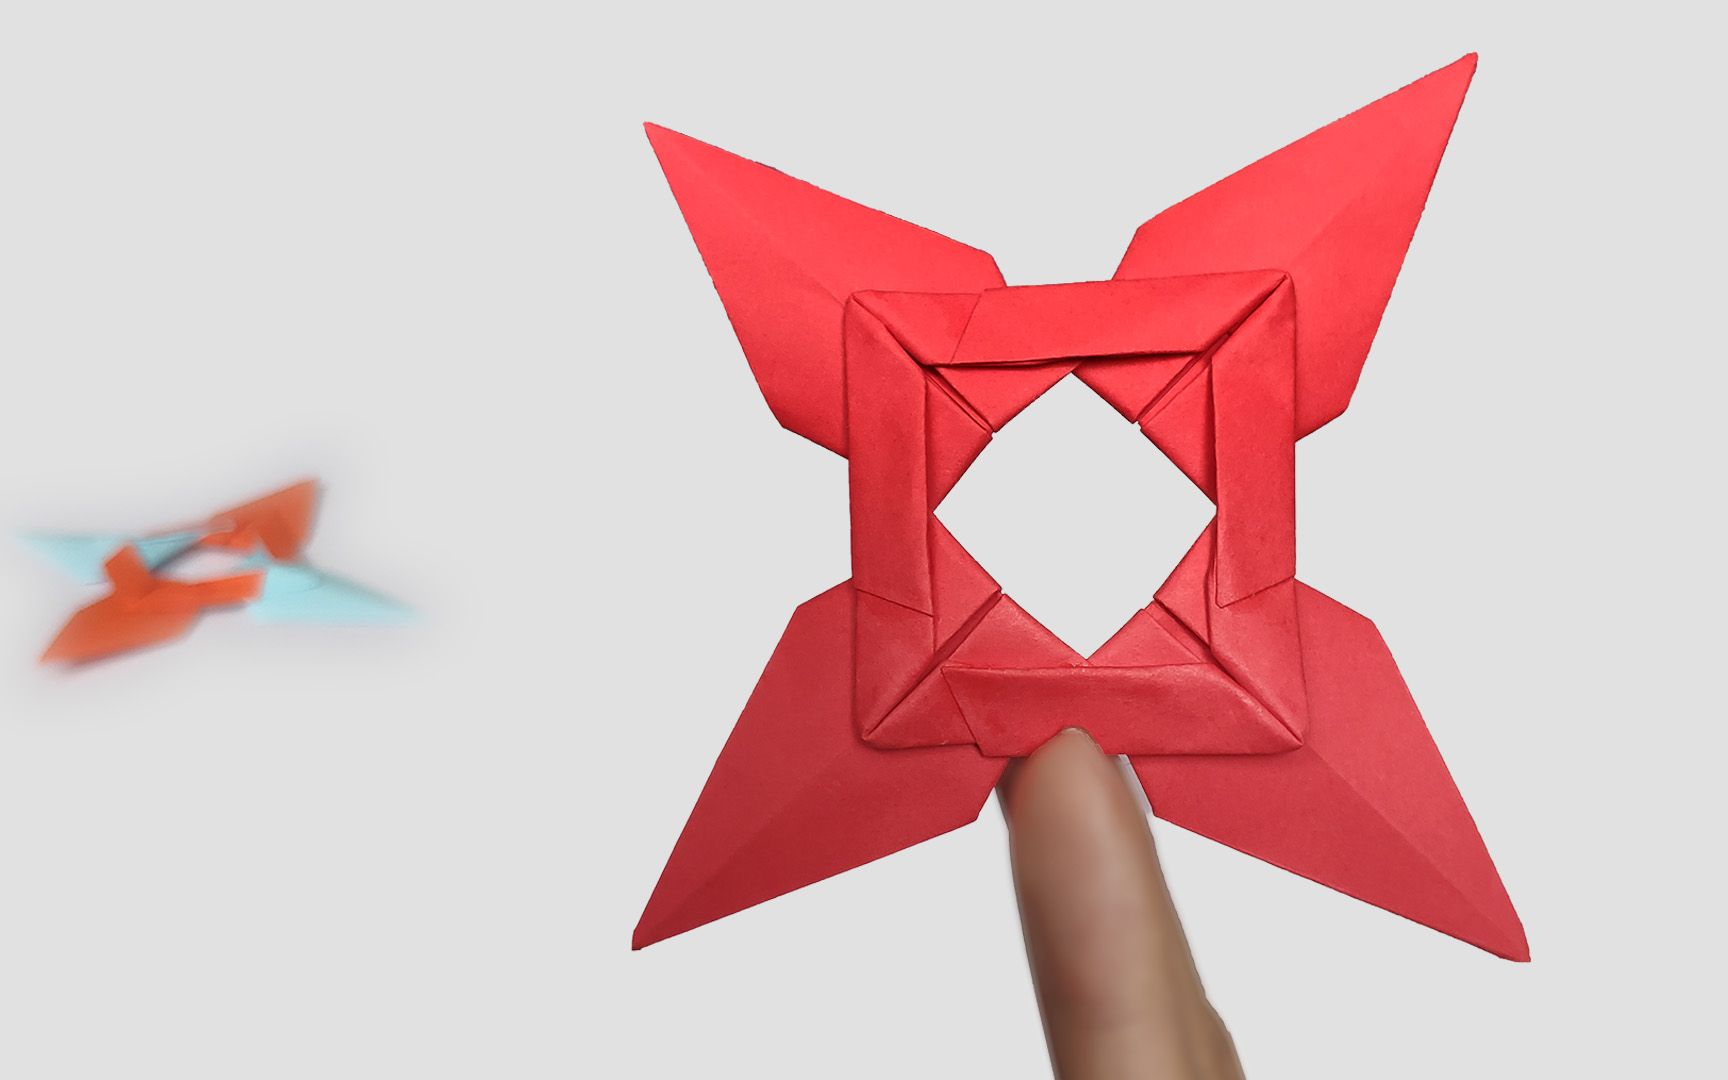 忍者回旋飞镖暗器如何用彩纸手工制作?简单完整儿童折纸玩具慢教程